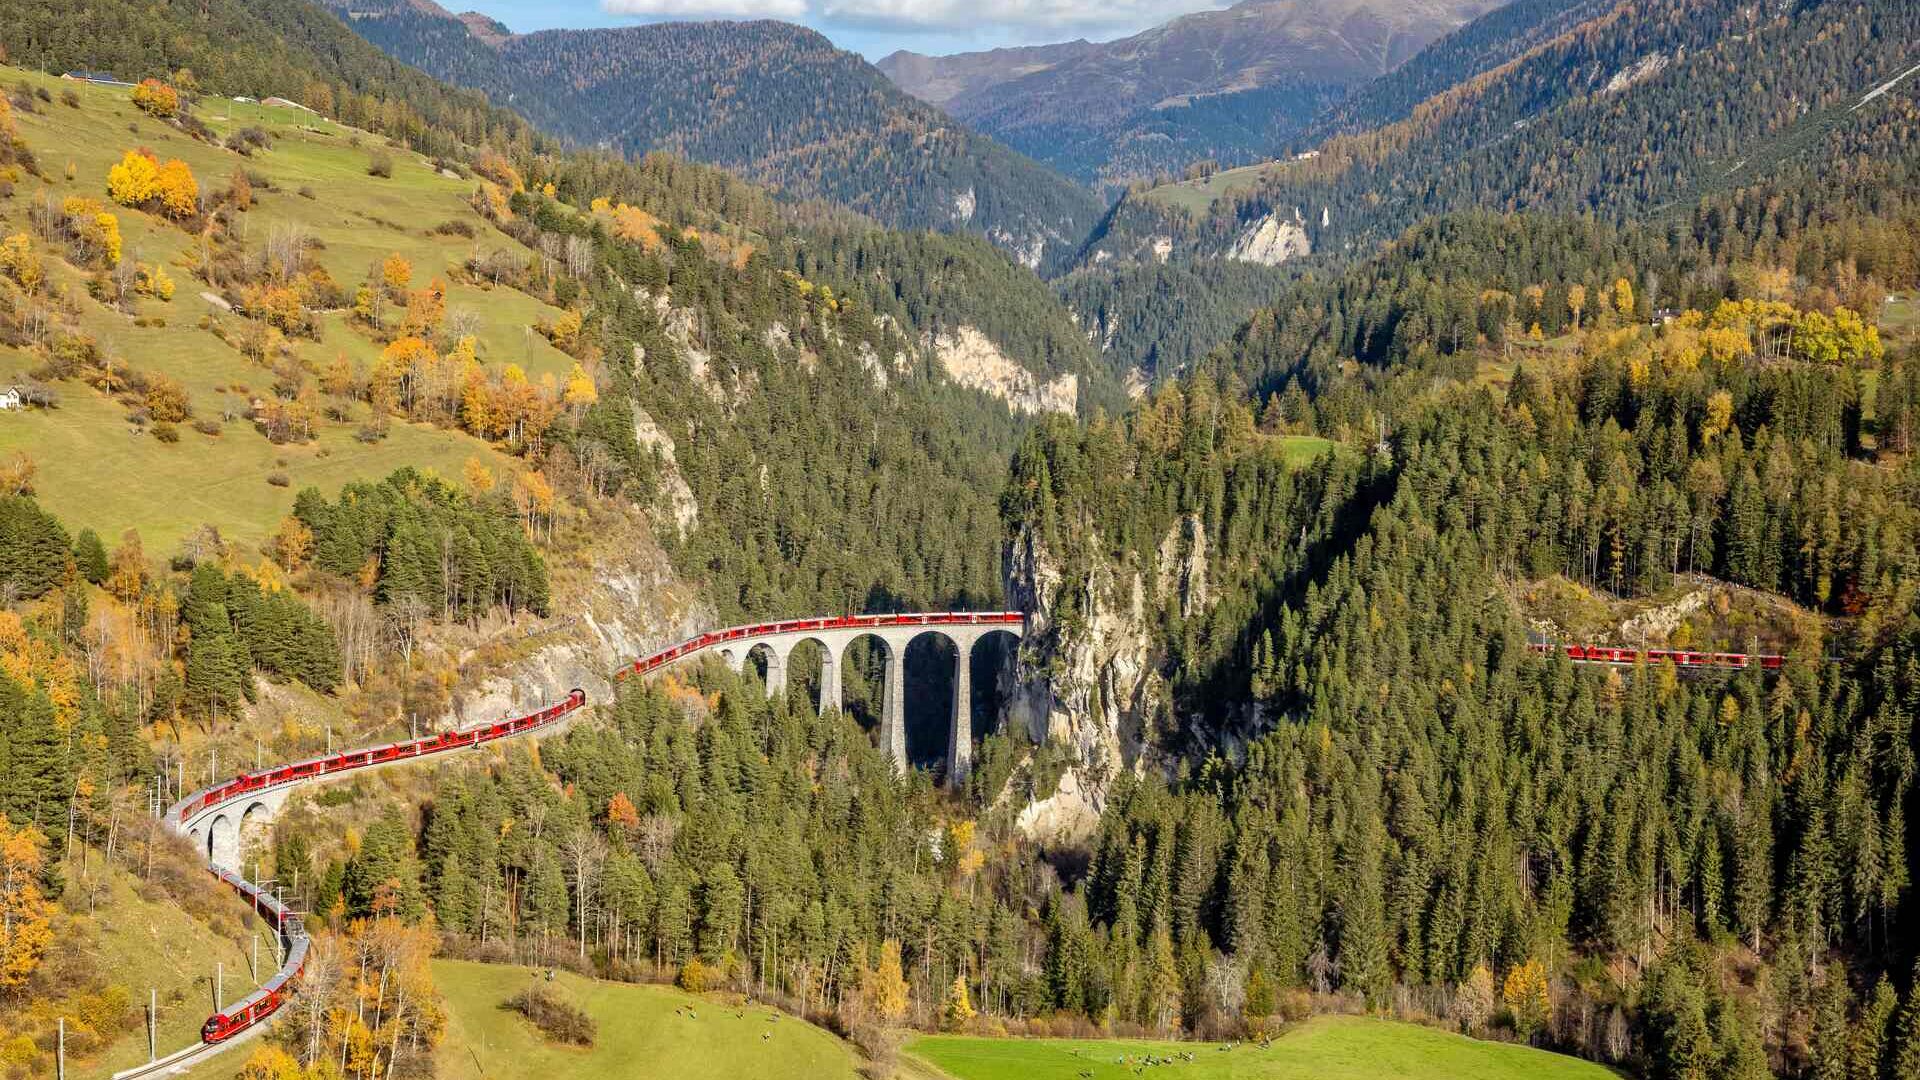 Најдужи ускотрачни воз на свету на прузи Албула Ретске железнице у Швајцарској 29. октобра 2022. (Фото: Анди Меттлер/Свисс-Имаге)